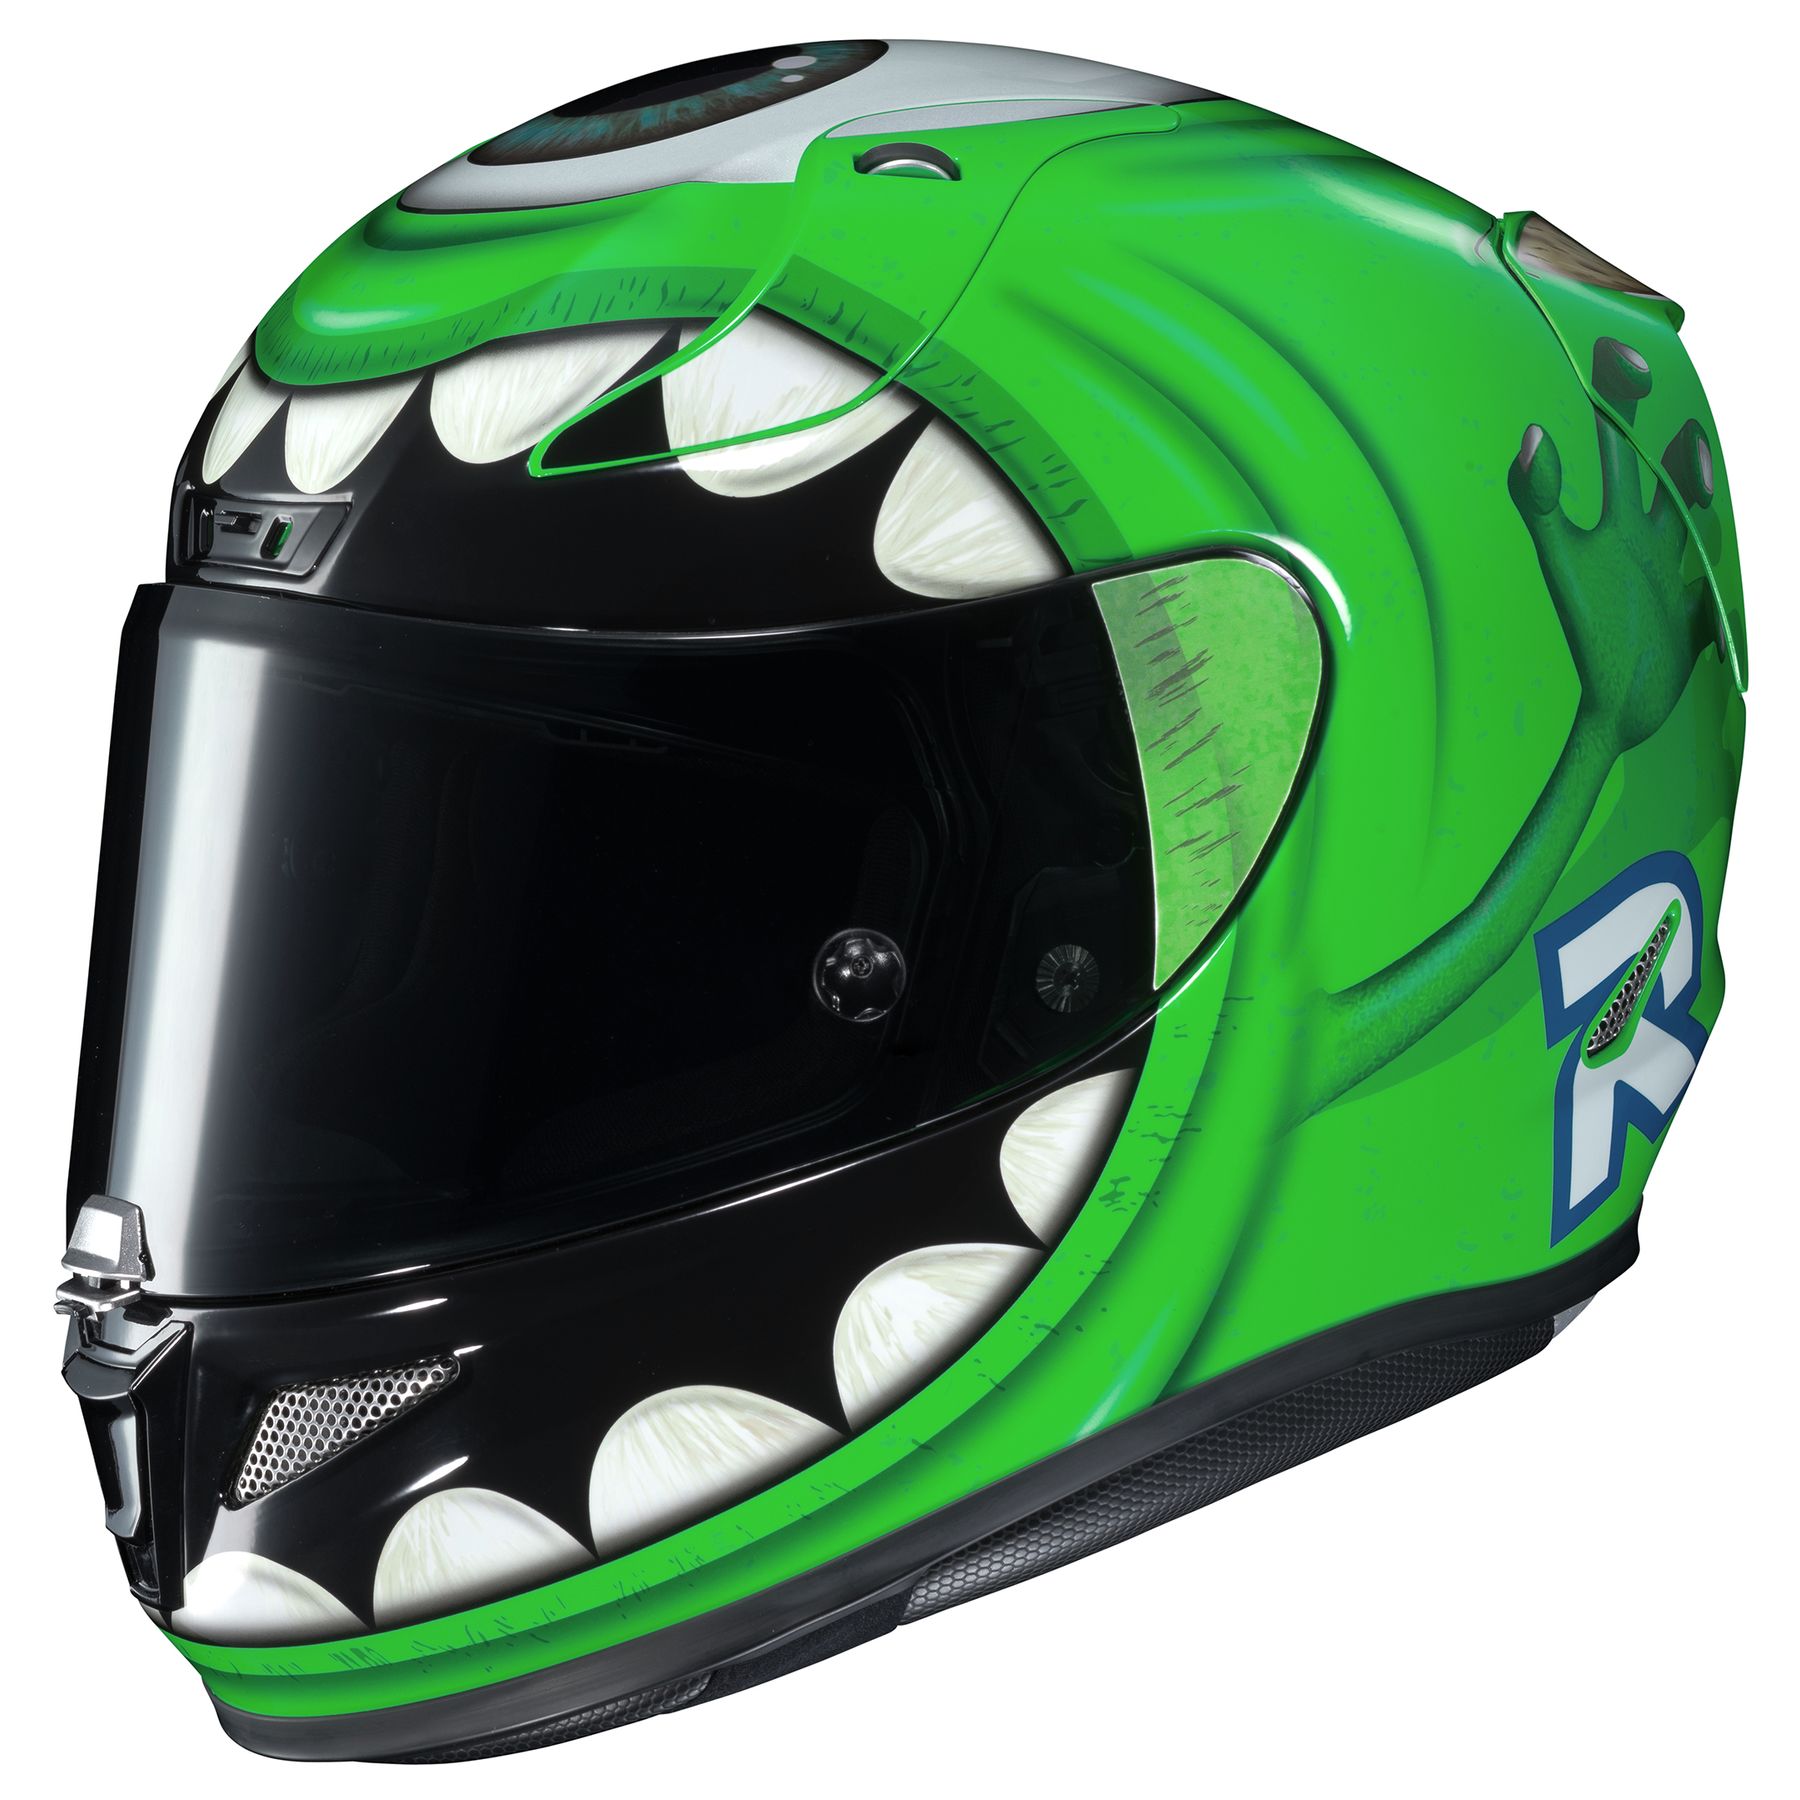 Buy HJC RPHA 11 Pro Mike Wazowski Helmet Online in India